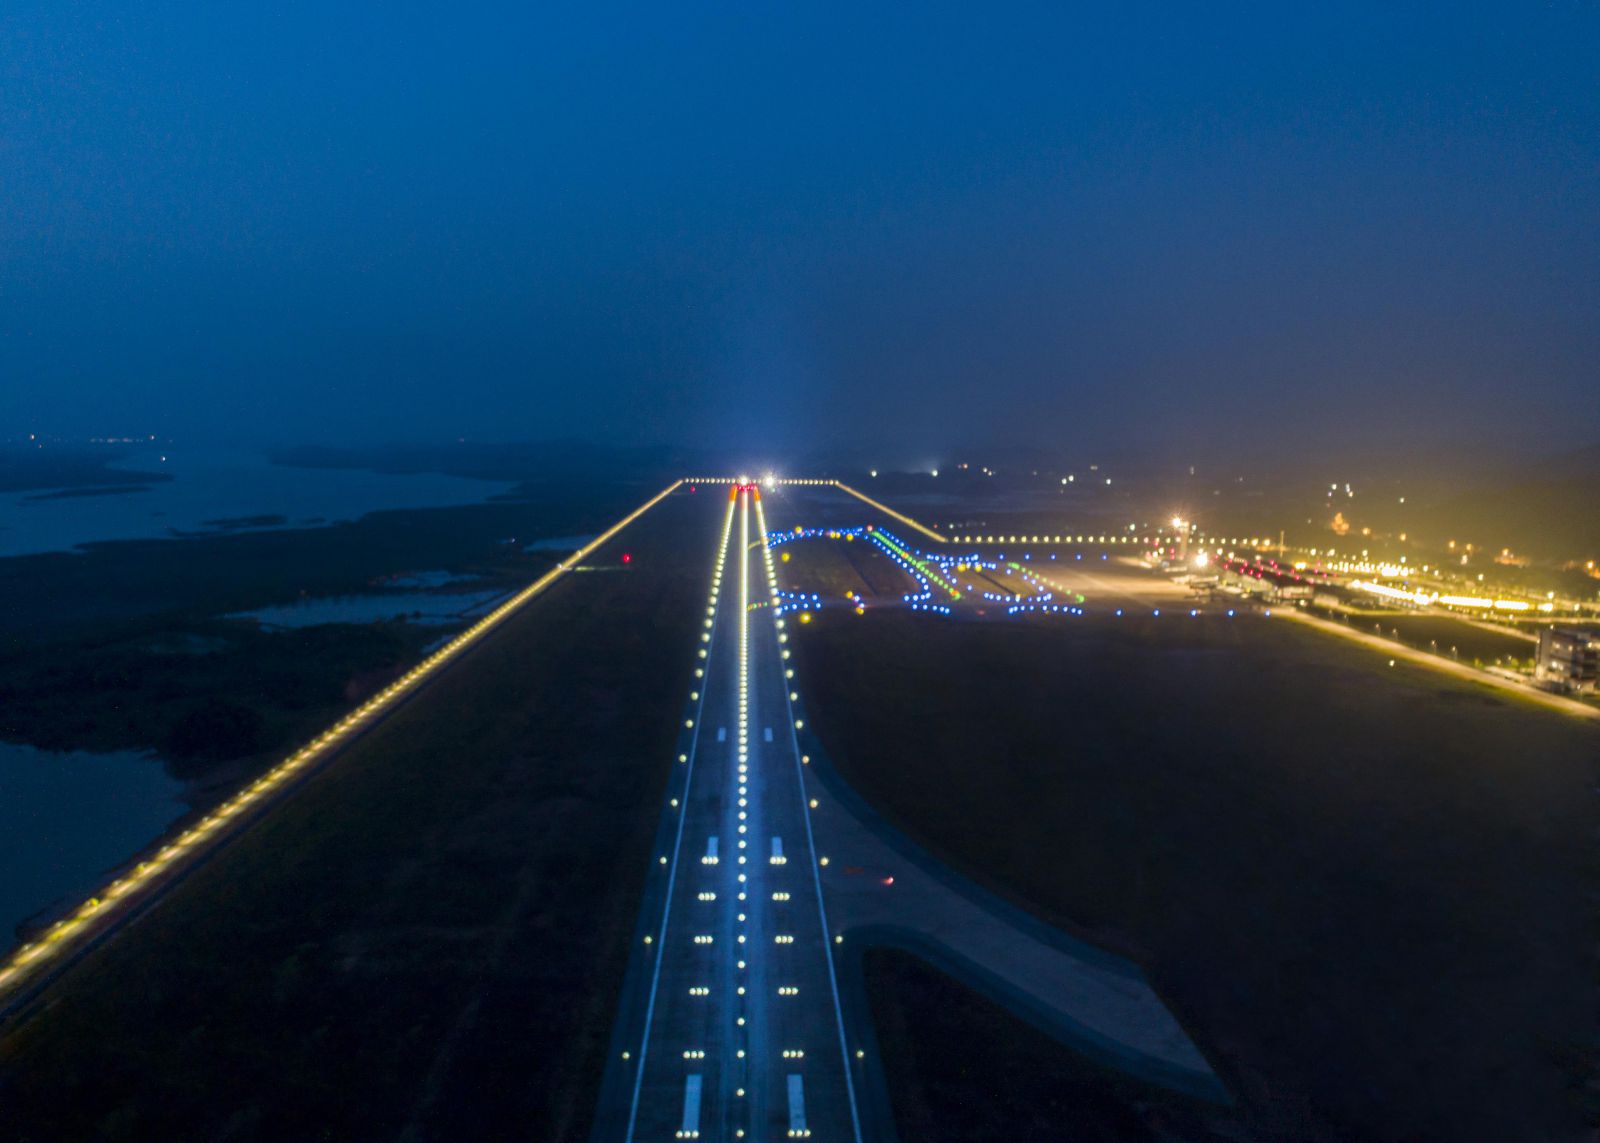 Sân bay Vân Đồn sở hữu trang thiết bị hiện đại bậc nhất Việt Nam (3)